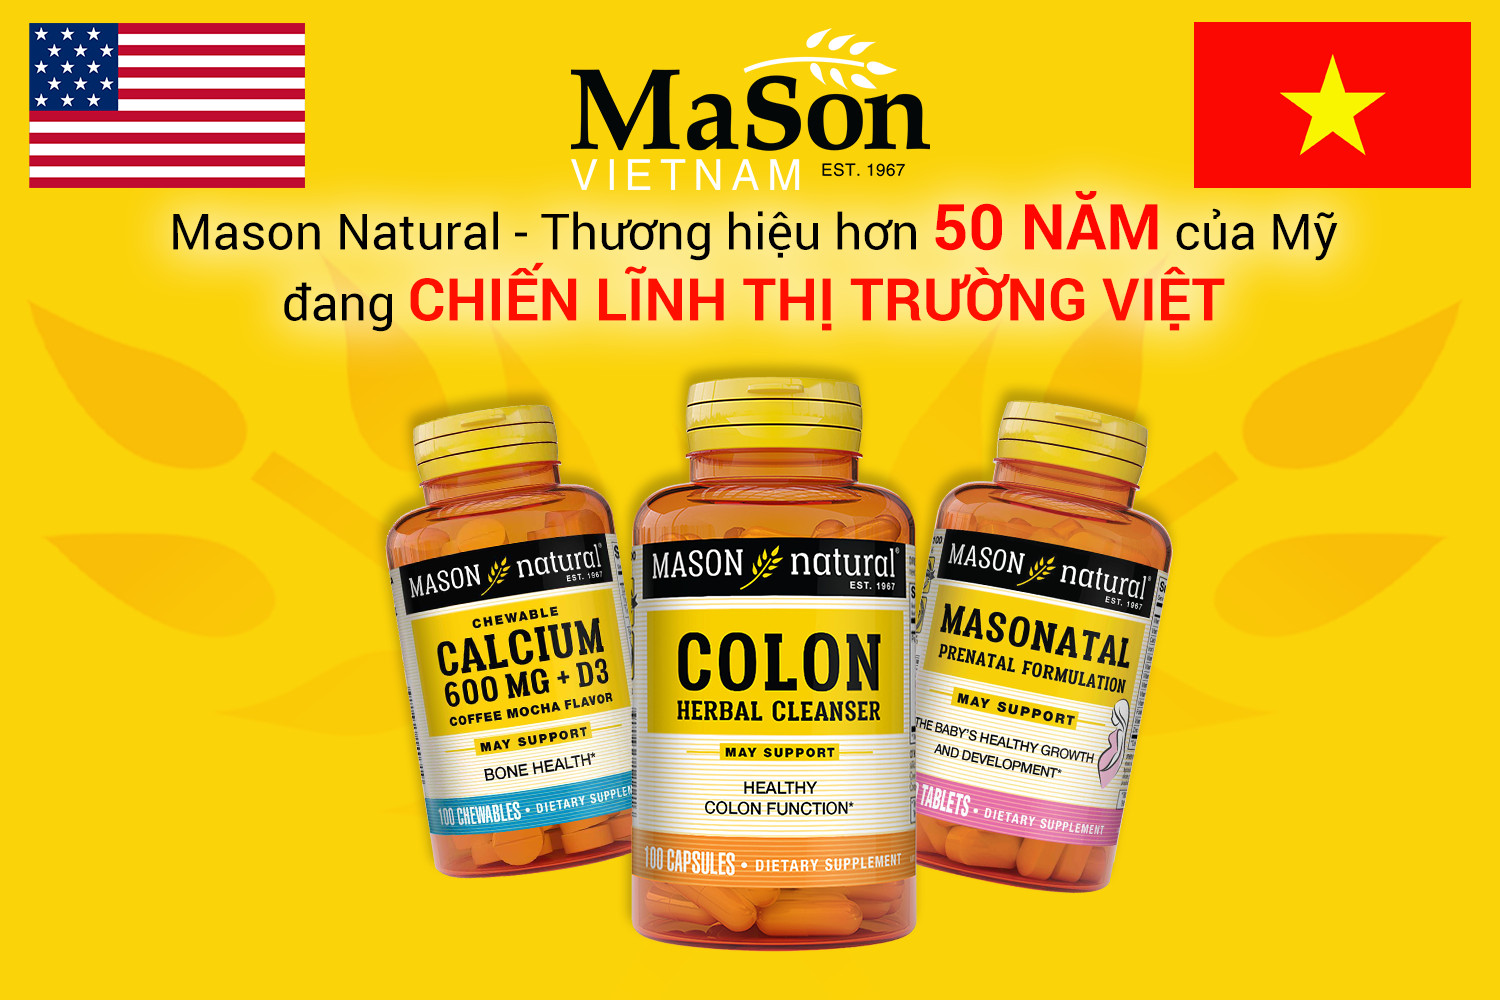 Những điều làm nên vị thế của Mason Natural tại thị trường Việt Nam